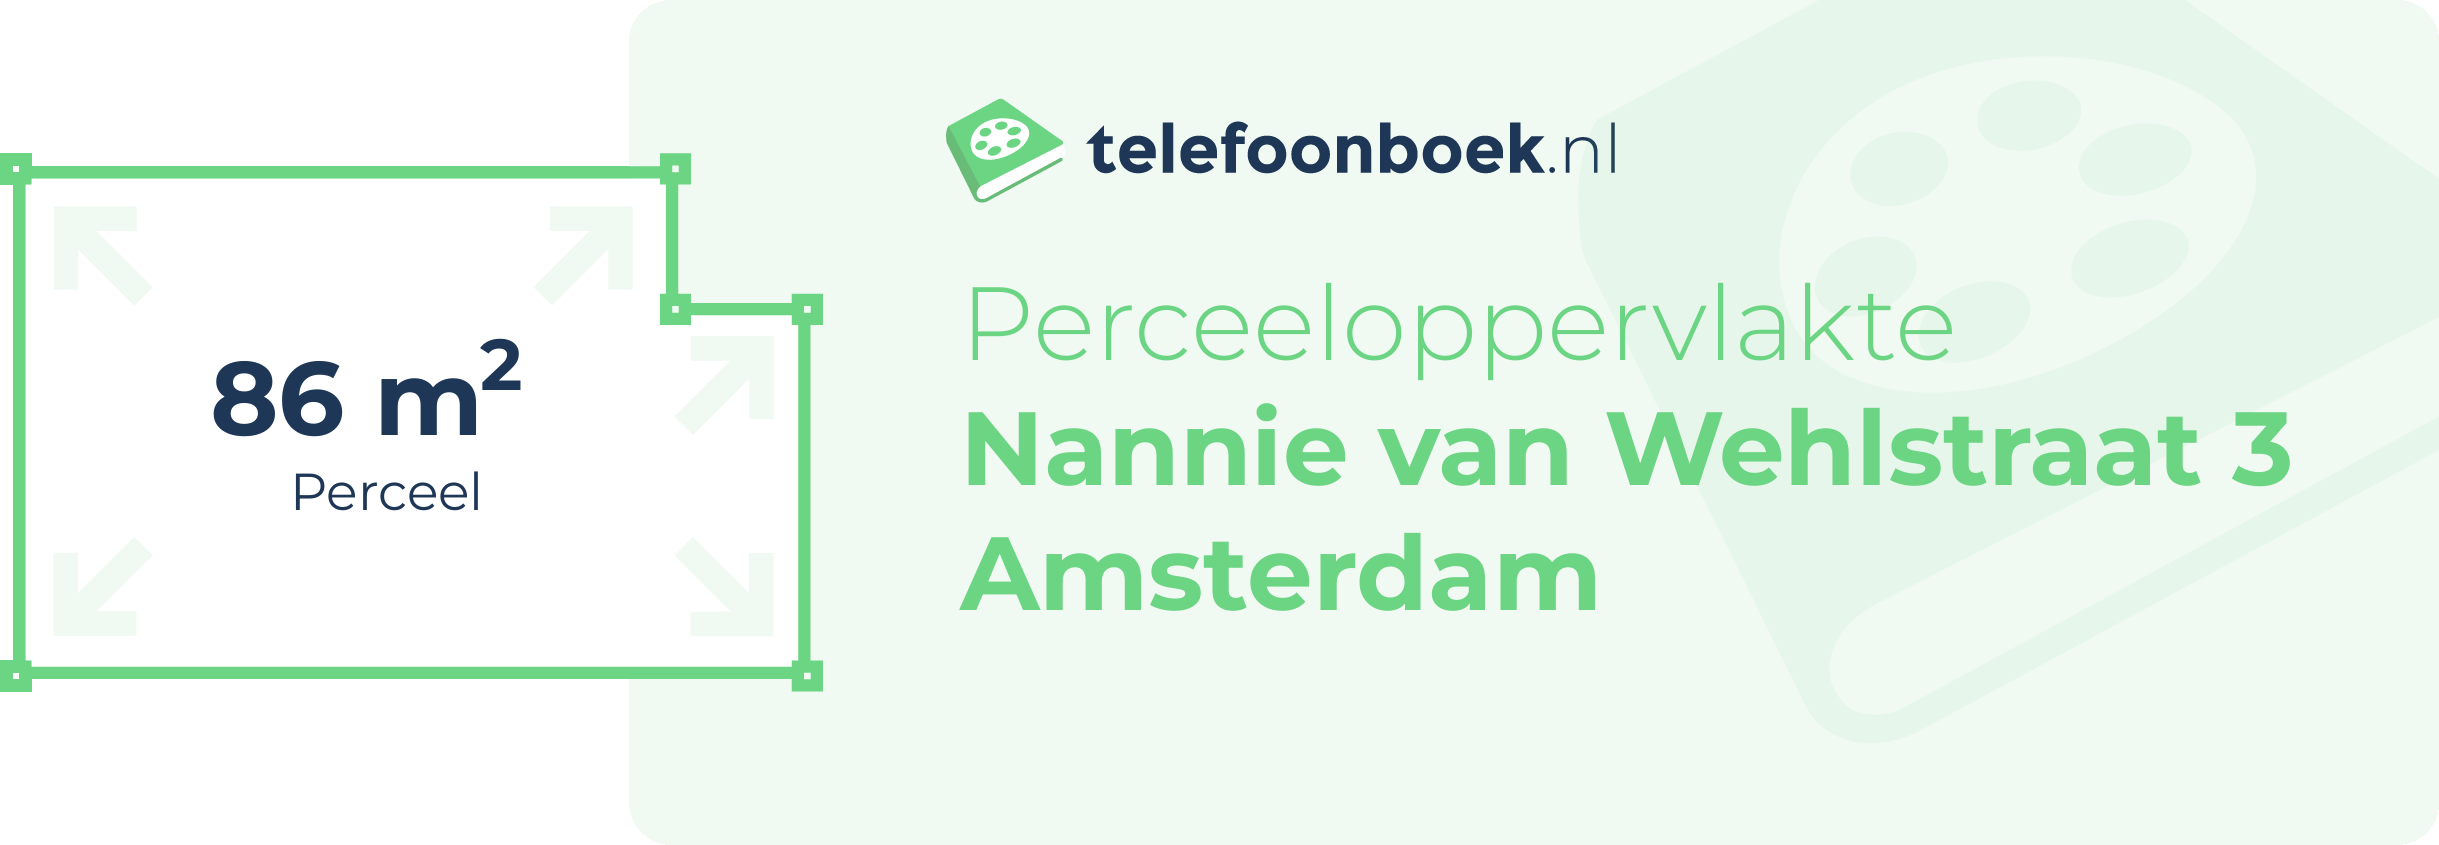 Perceeloppervlakte Nannie Van Wehlstraat 3 Amsterdam